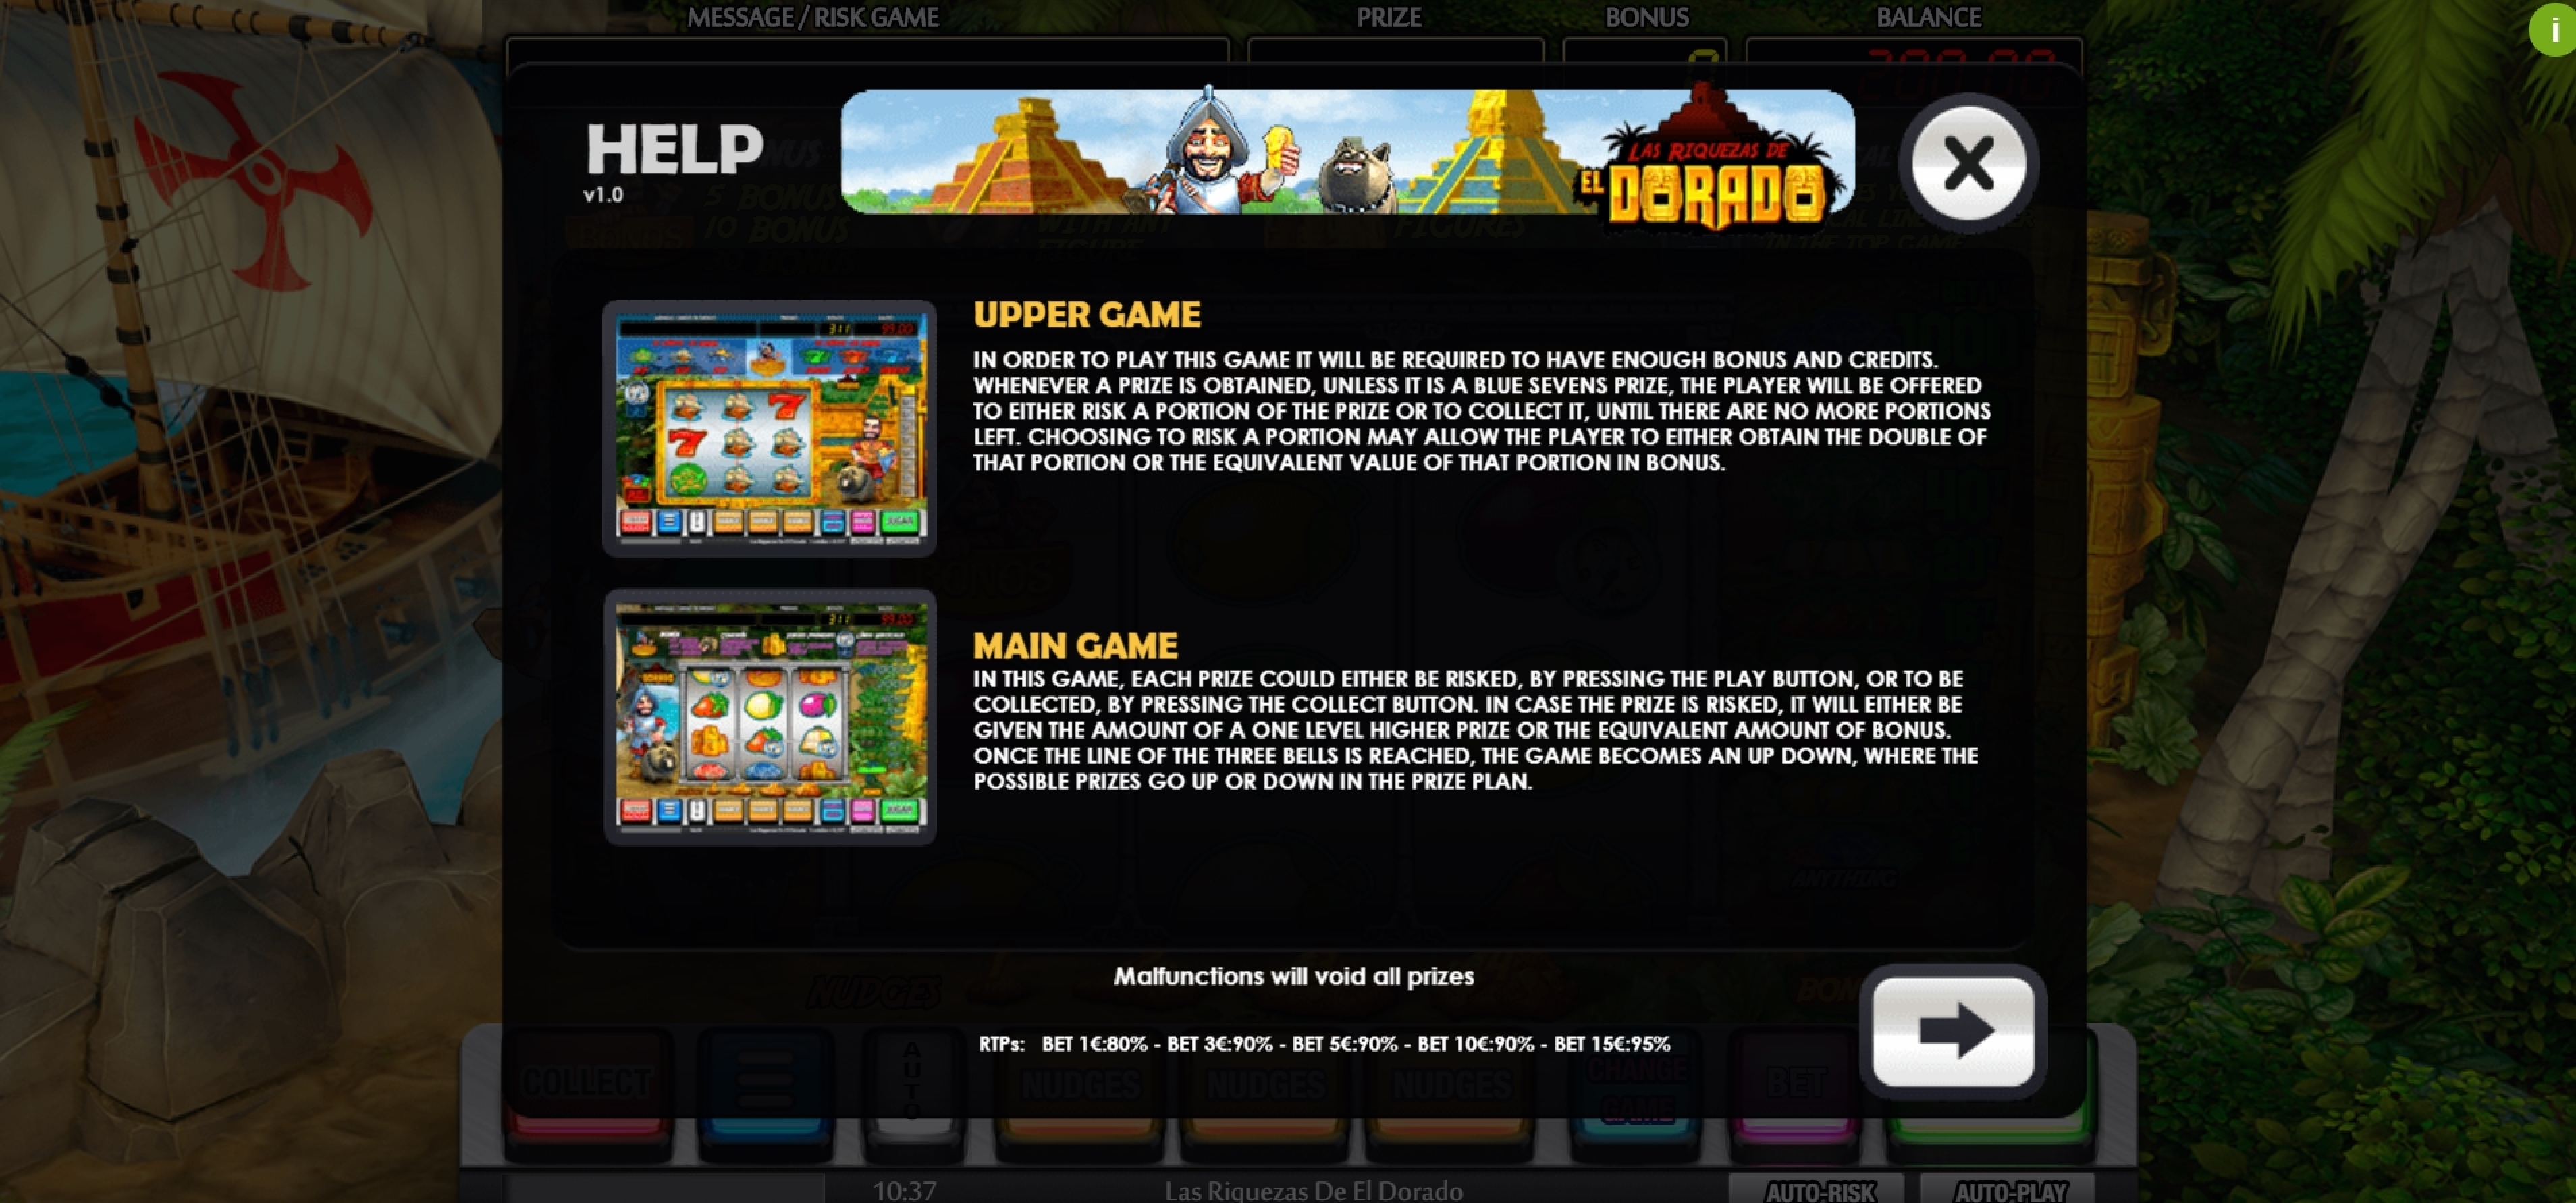 Info of Las Riquezas De El Dorado Slot Game by MGA